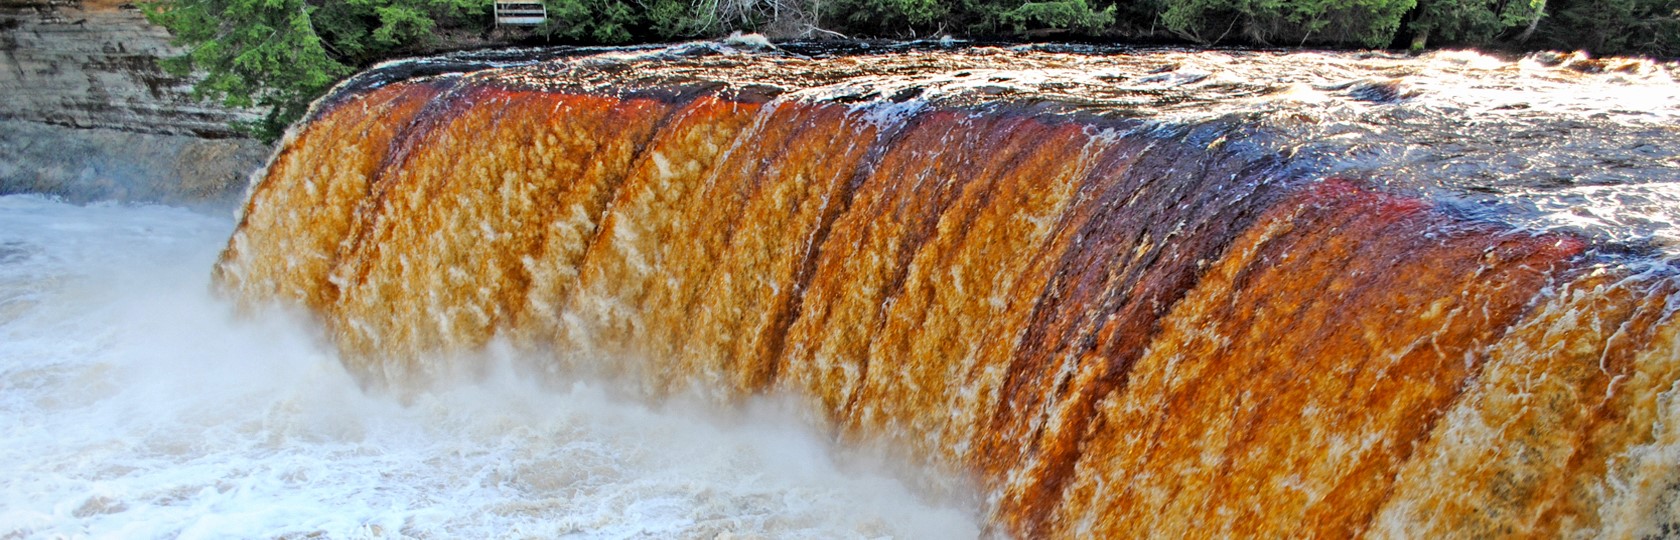 Upper Tahquamenon Falls in Spring